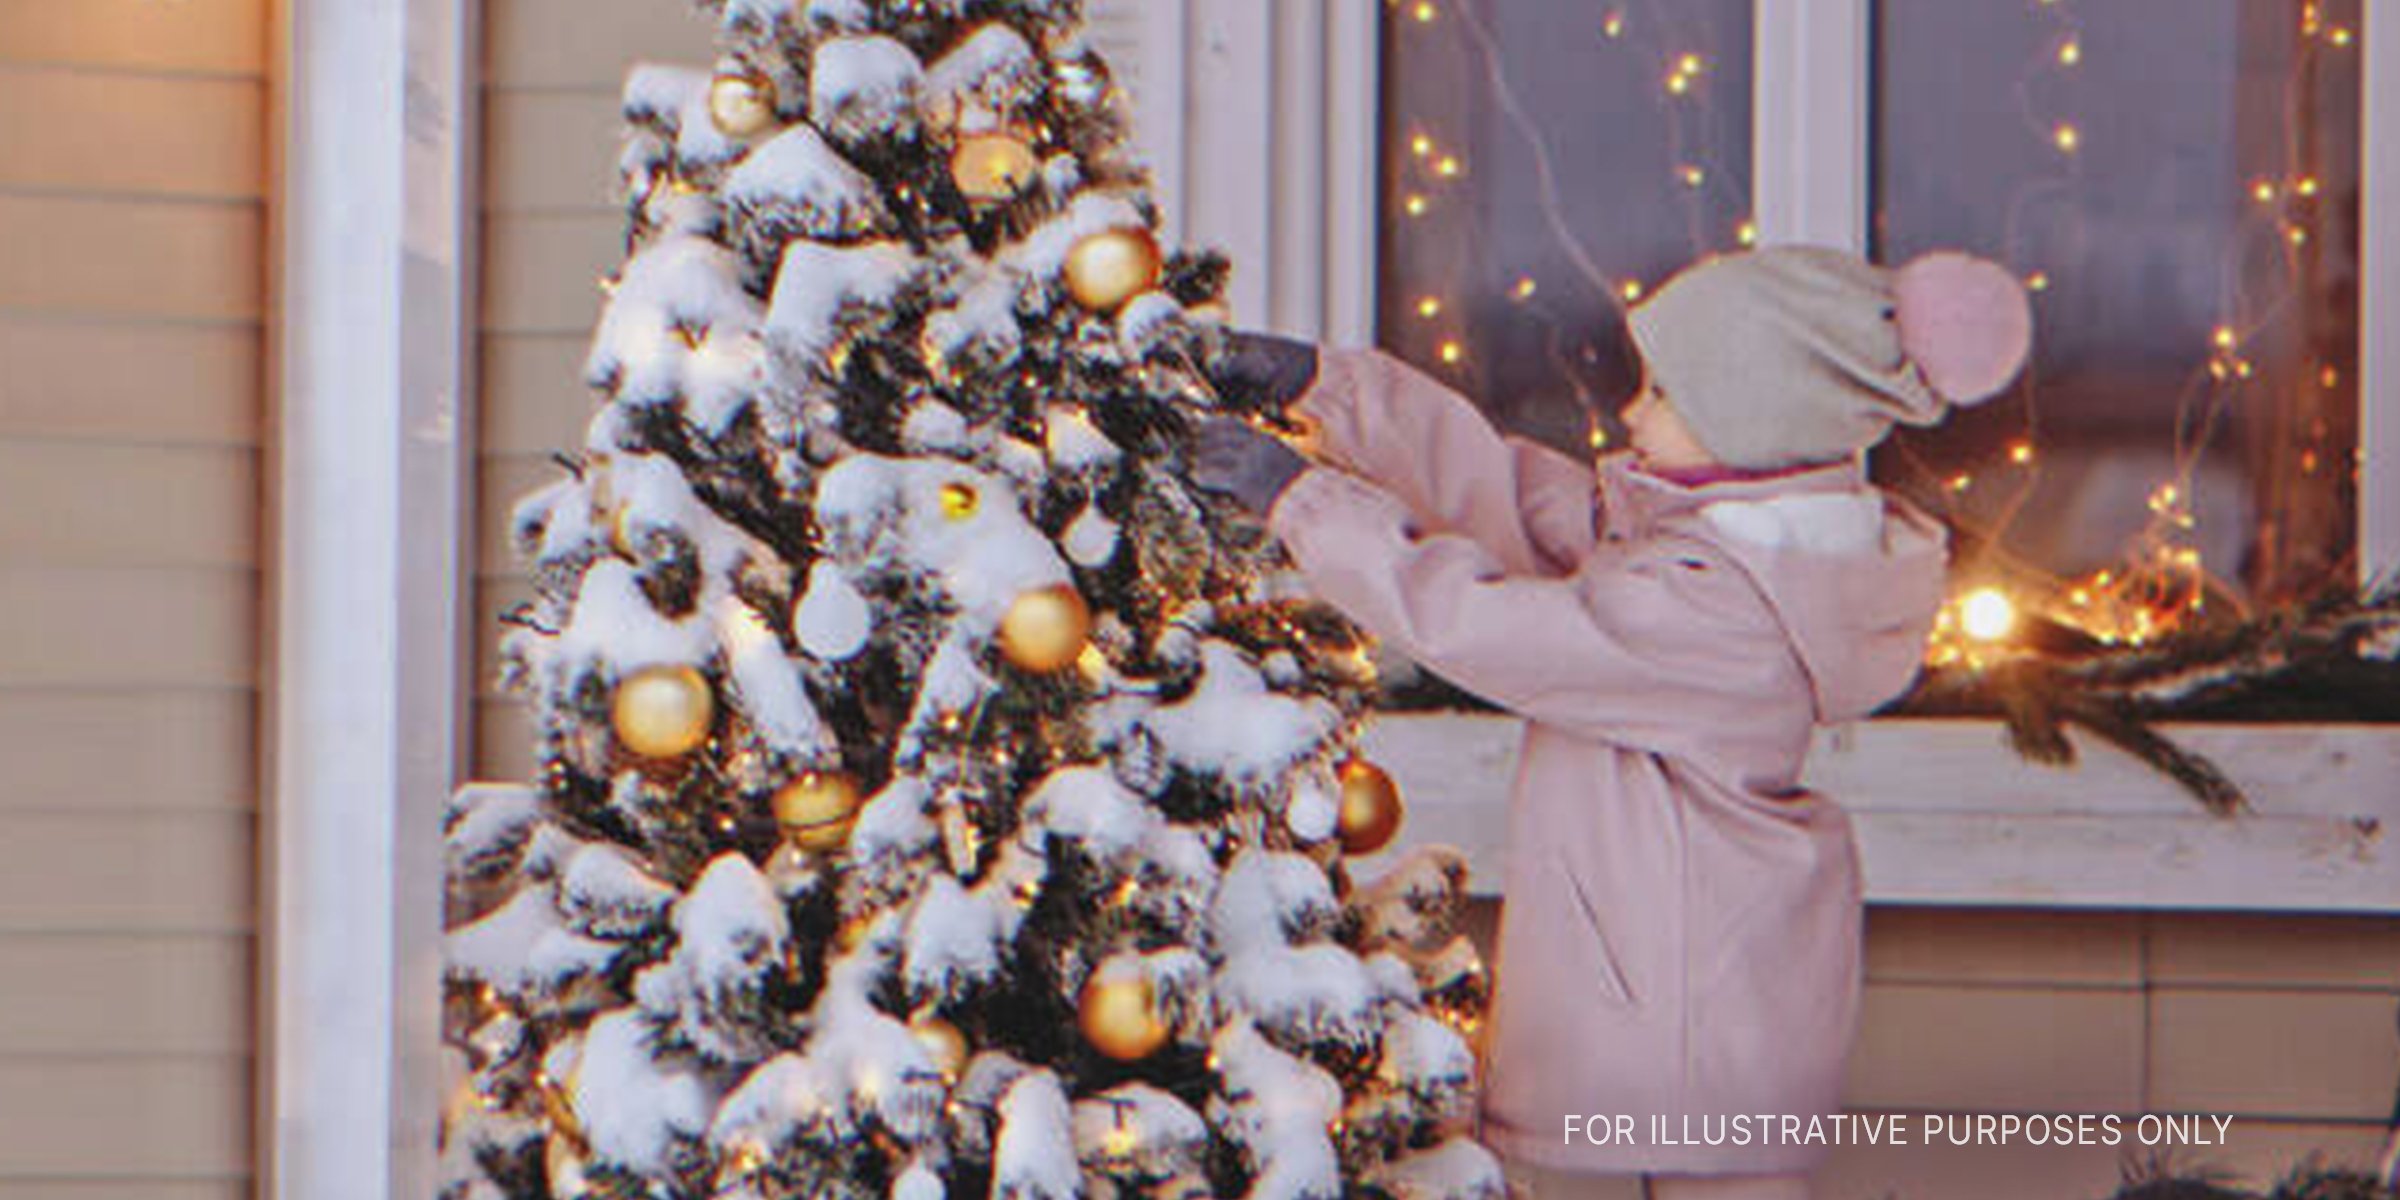 Une petite fille décorant un arbre de Noël. | Source : Shutterstock